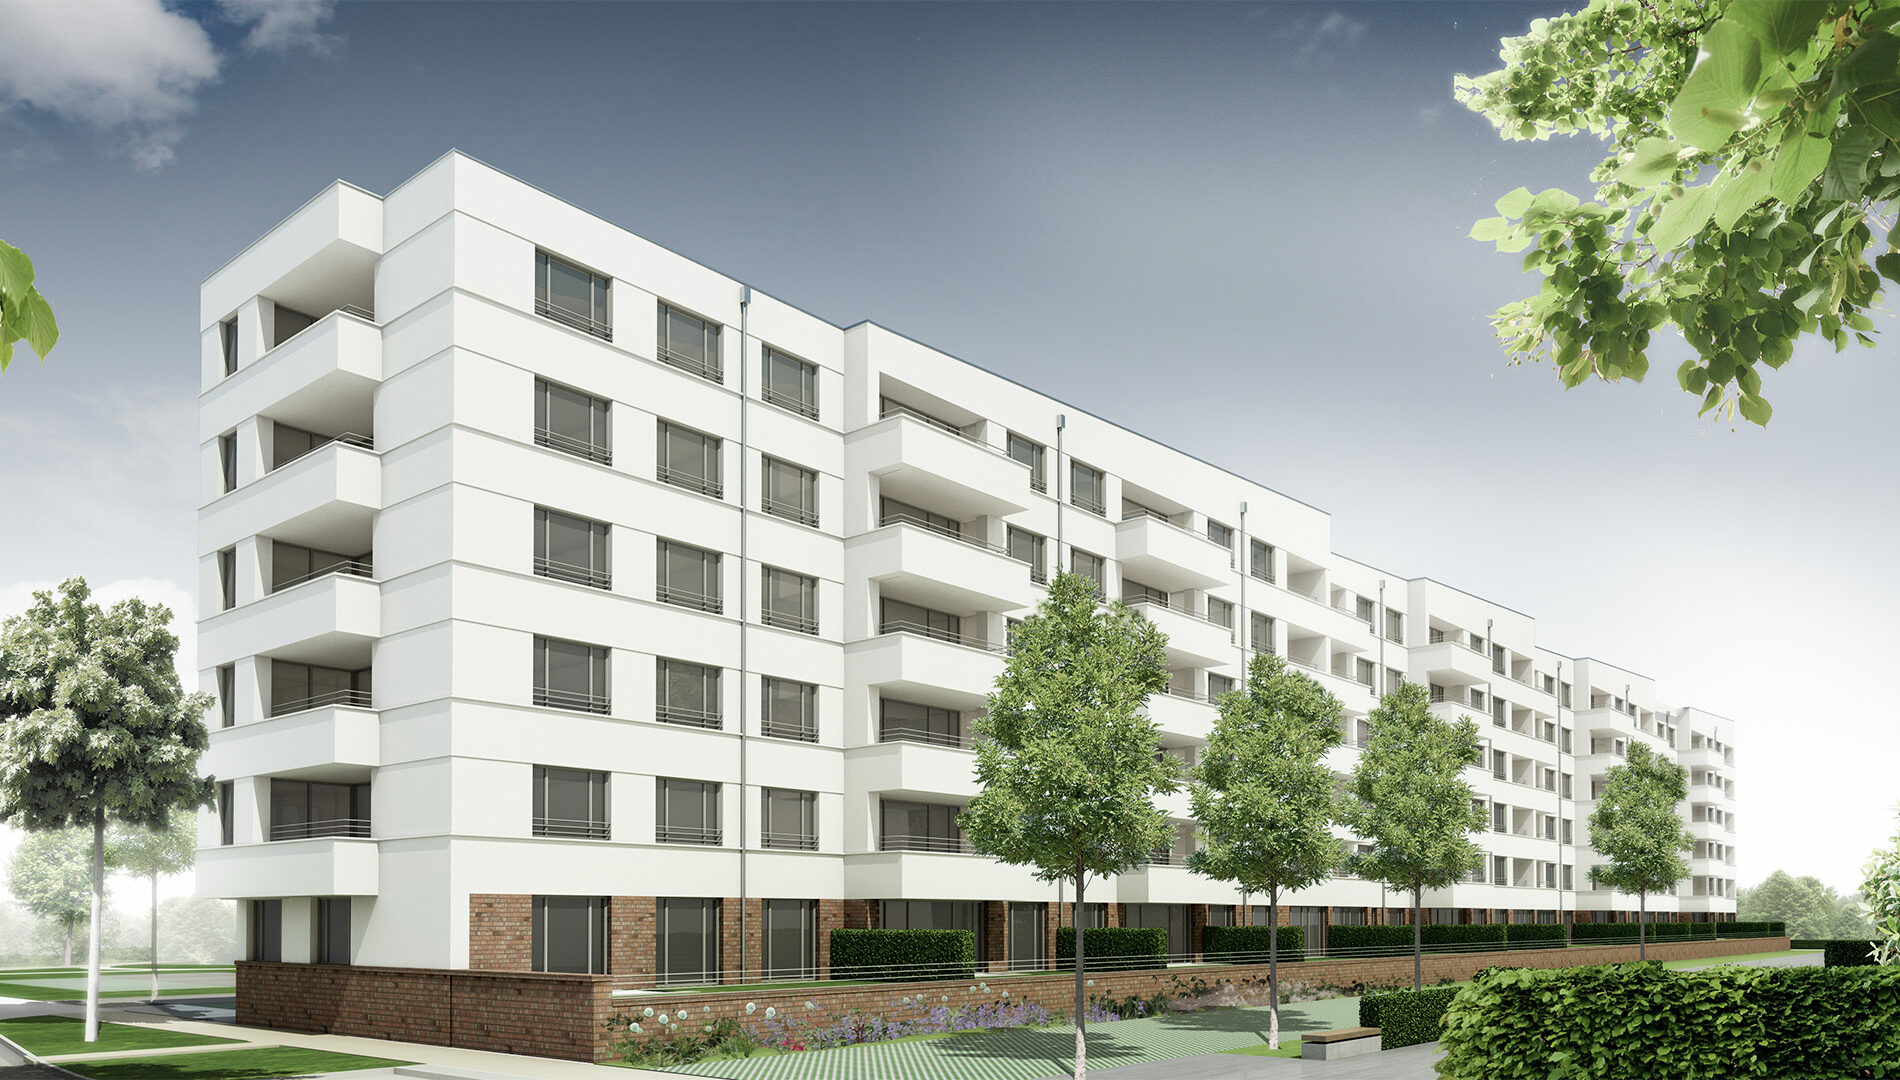 Neuer Wohnungsbau auf dem ehemaligen VAG-Areal Nürnberg